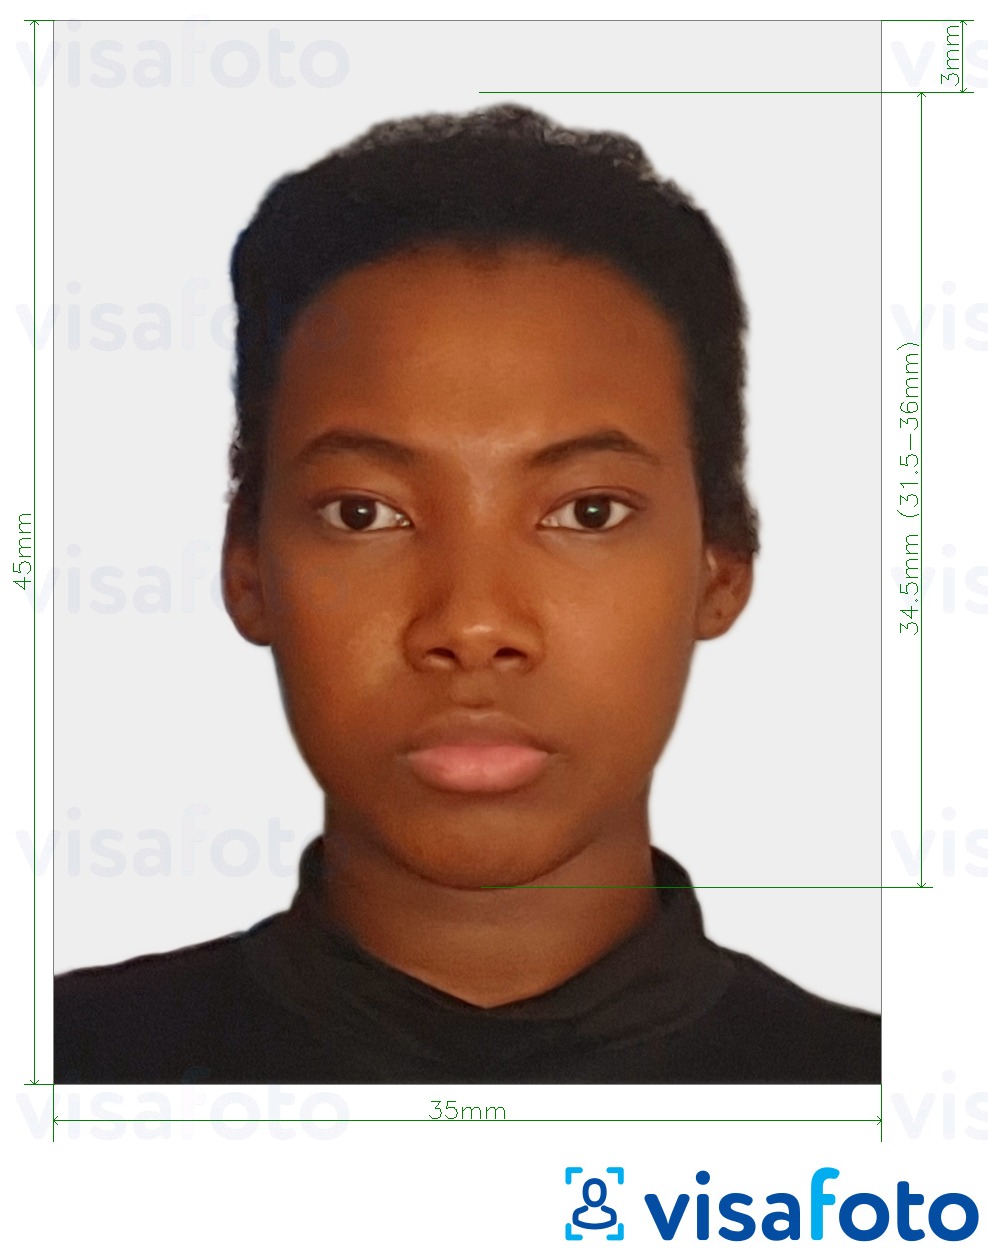 Ejemplo de foto para Pasaporte de Surinam 45x35 mm (1.77x1.37 inch) con la especificación del tamaño exacto